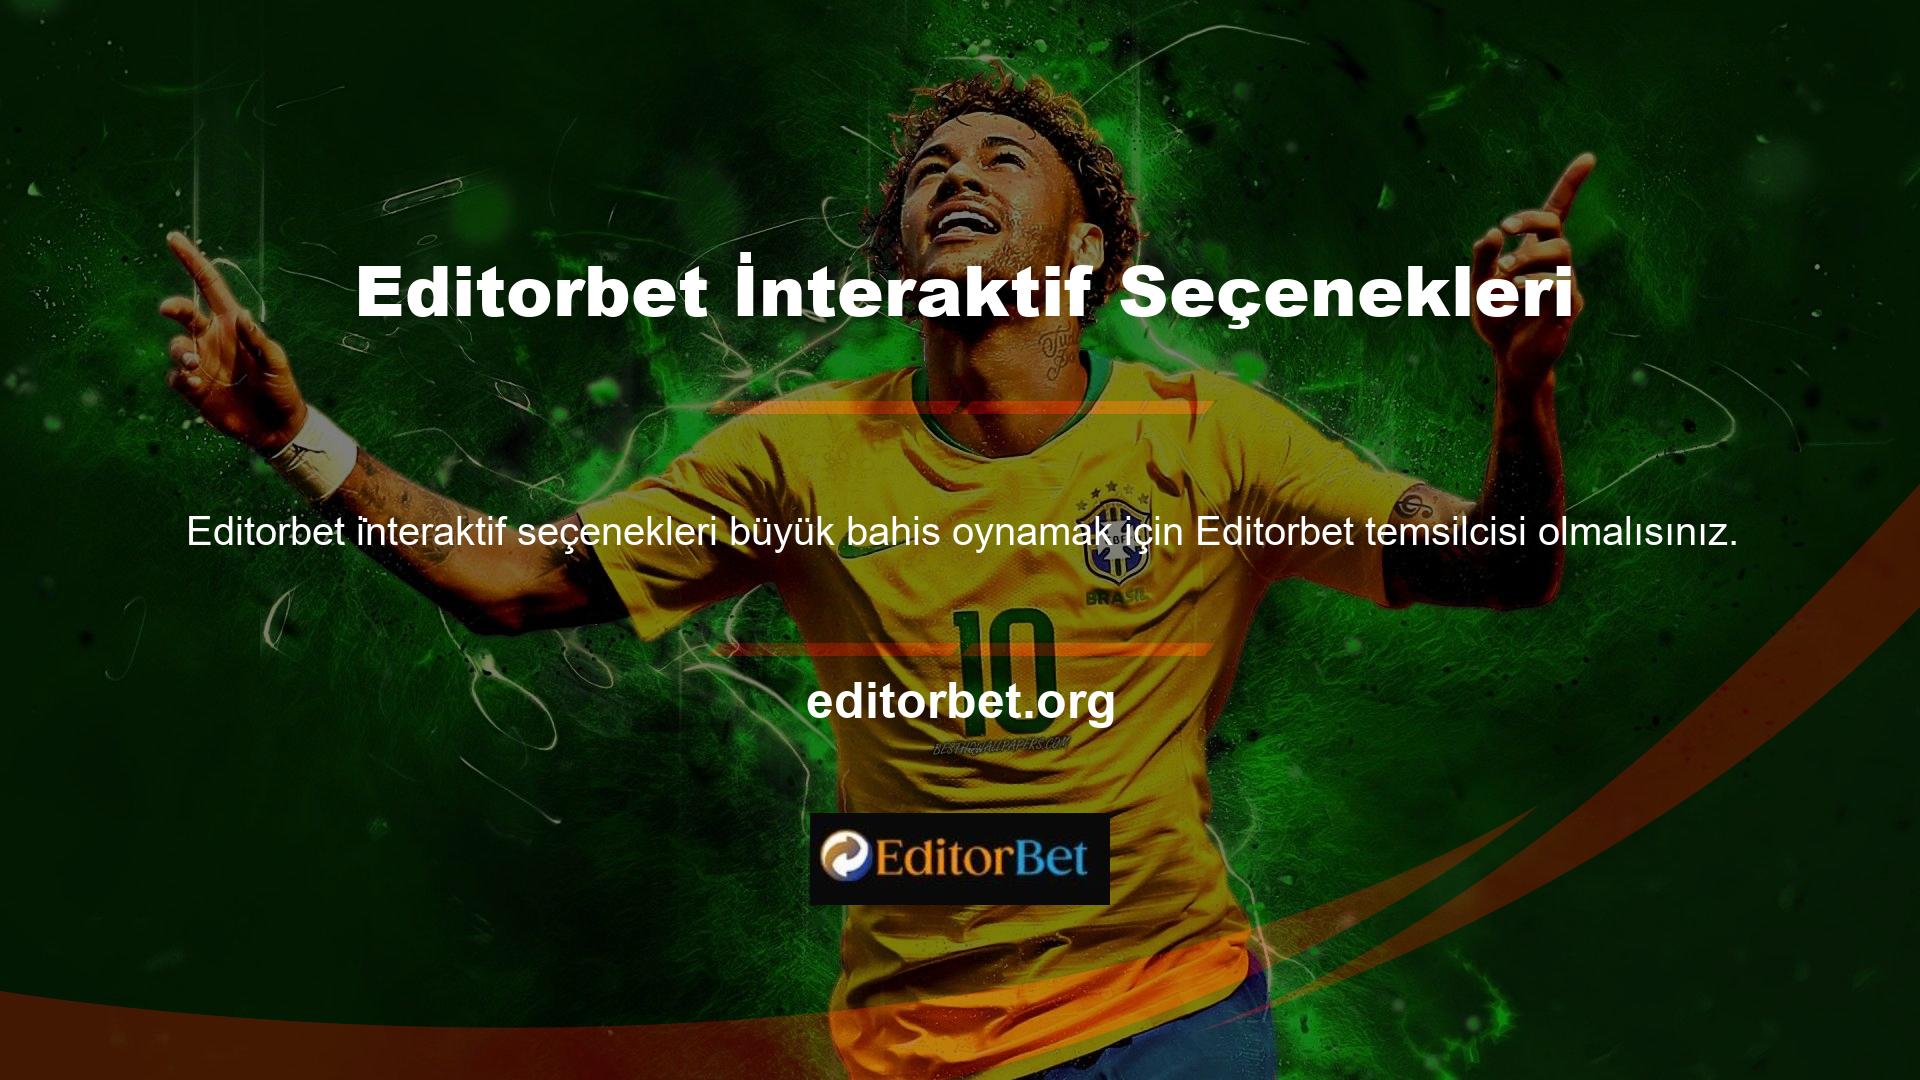 Editorbet web sitesi, tüm spor bahis ihtiyaçlarınız için çok çeşitli seçenekler sunmaya çalışmaktadır